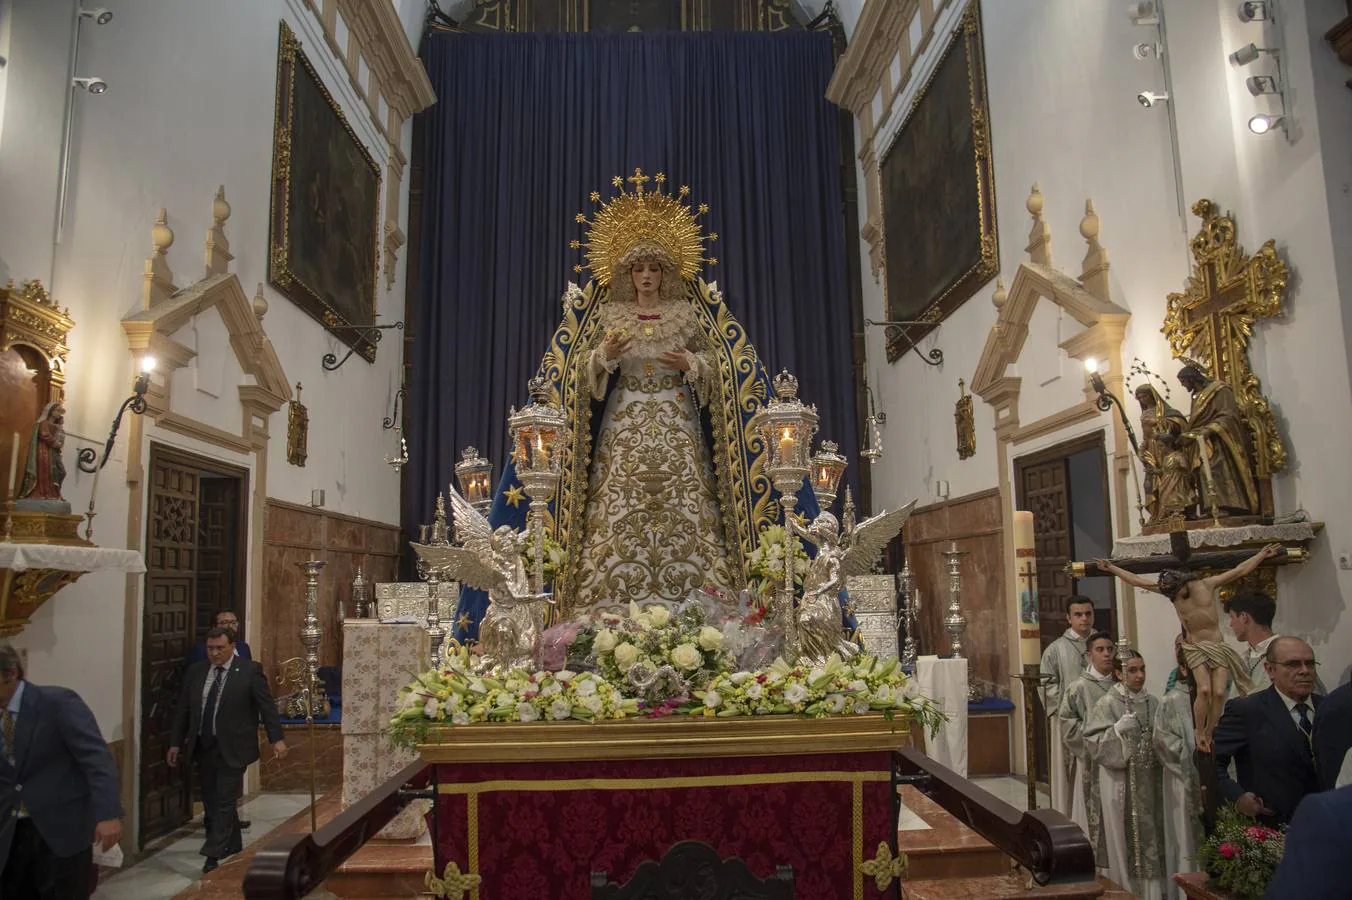 Galería del rosario vespertino de la Virgen de los Ángeles de los Negritos